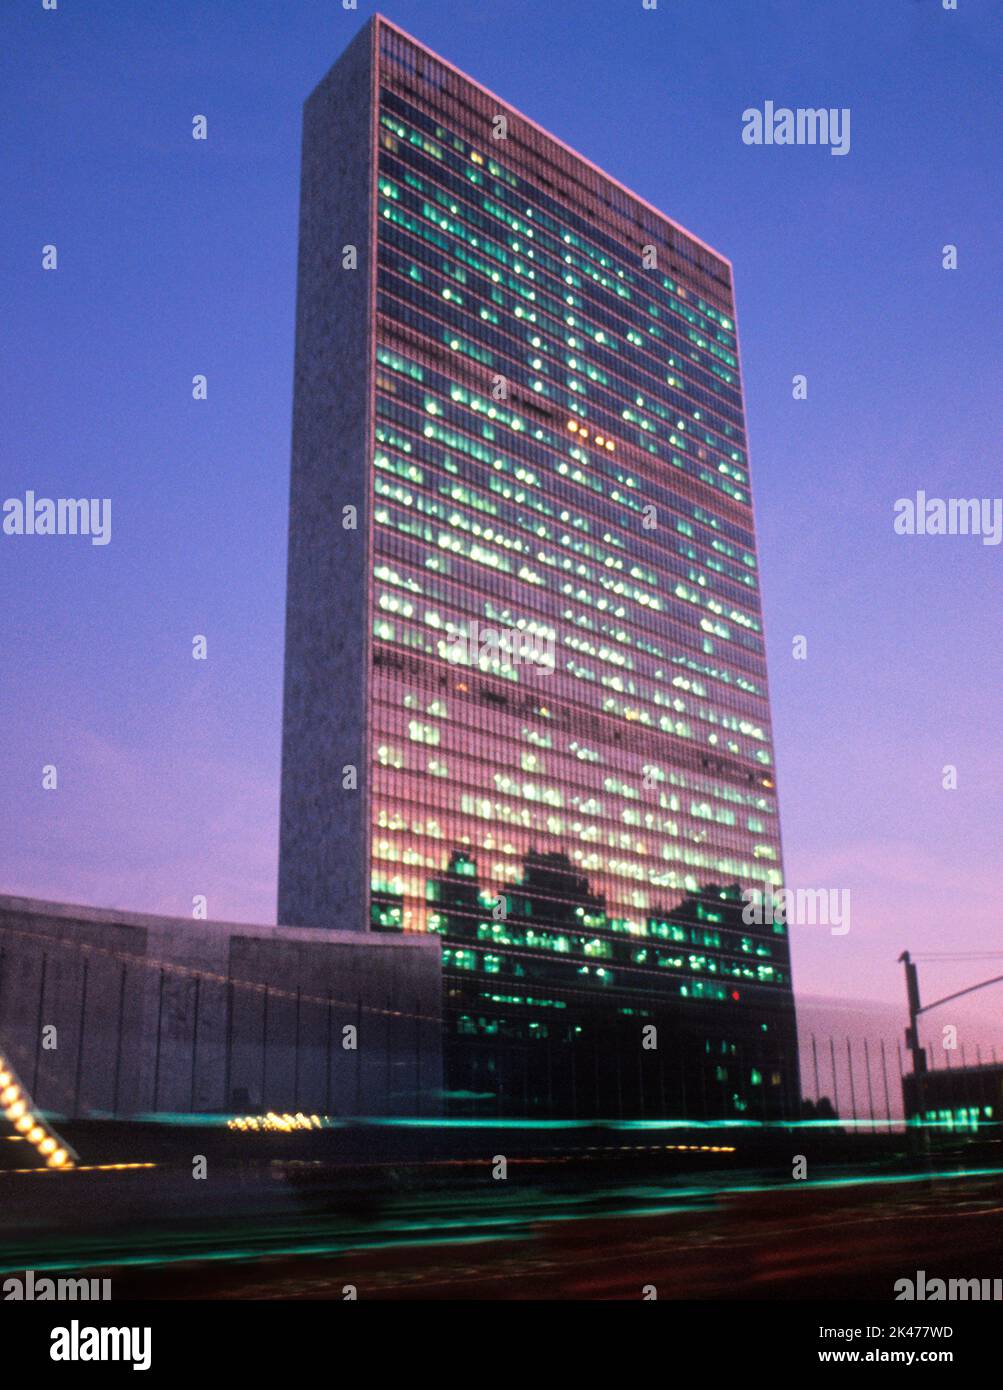 Bâtiment du Secrétariat des Nations Unies au siège de l'ONU à New York, la nuit. Turtle Bay, Midtown Manhattan, États-Unis Banque D'Images